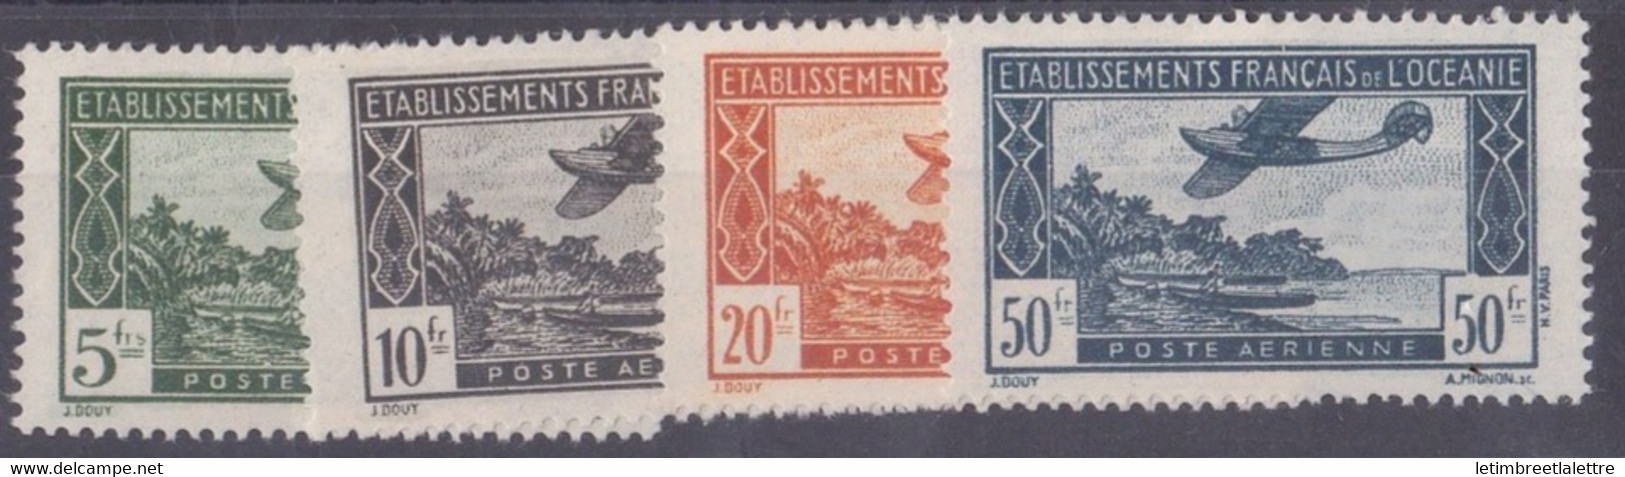 Océanie - Poste Aérienne - YT N° 14 à 17 ** - Neuf Sans Charnière - 1944 - Aéreo